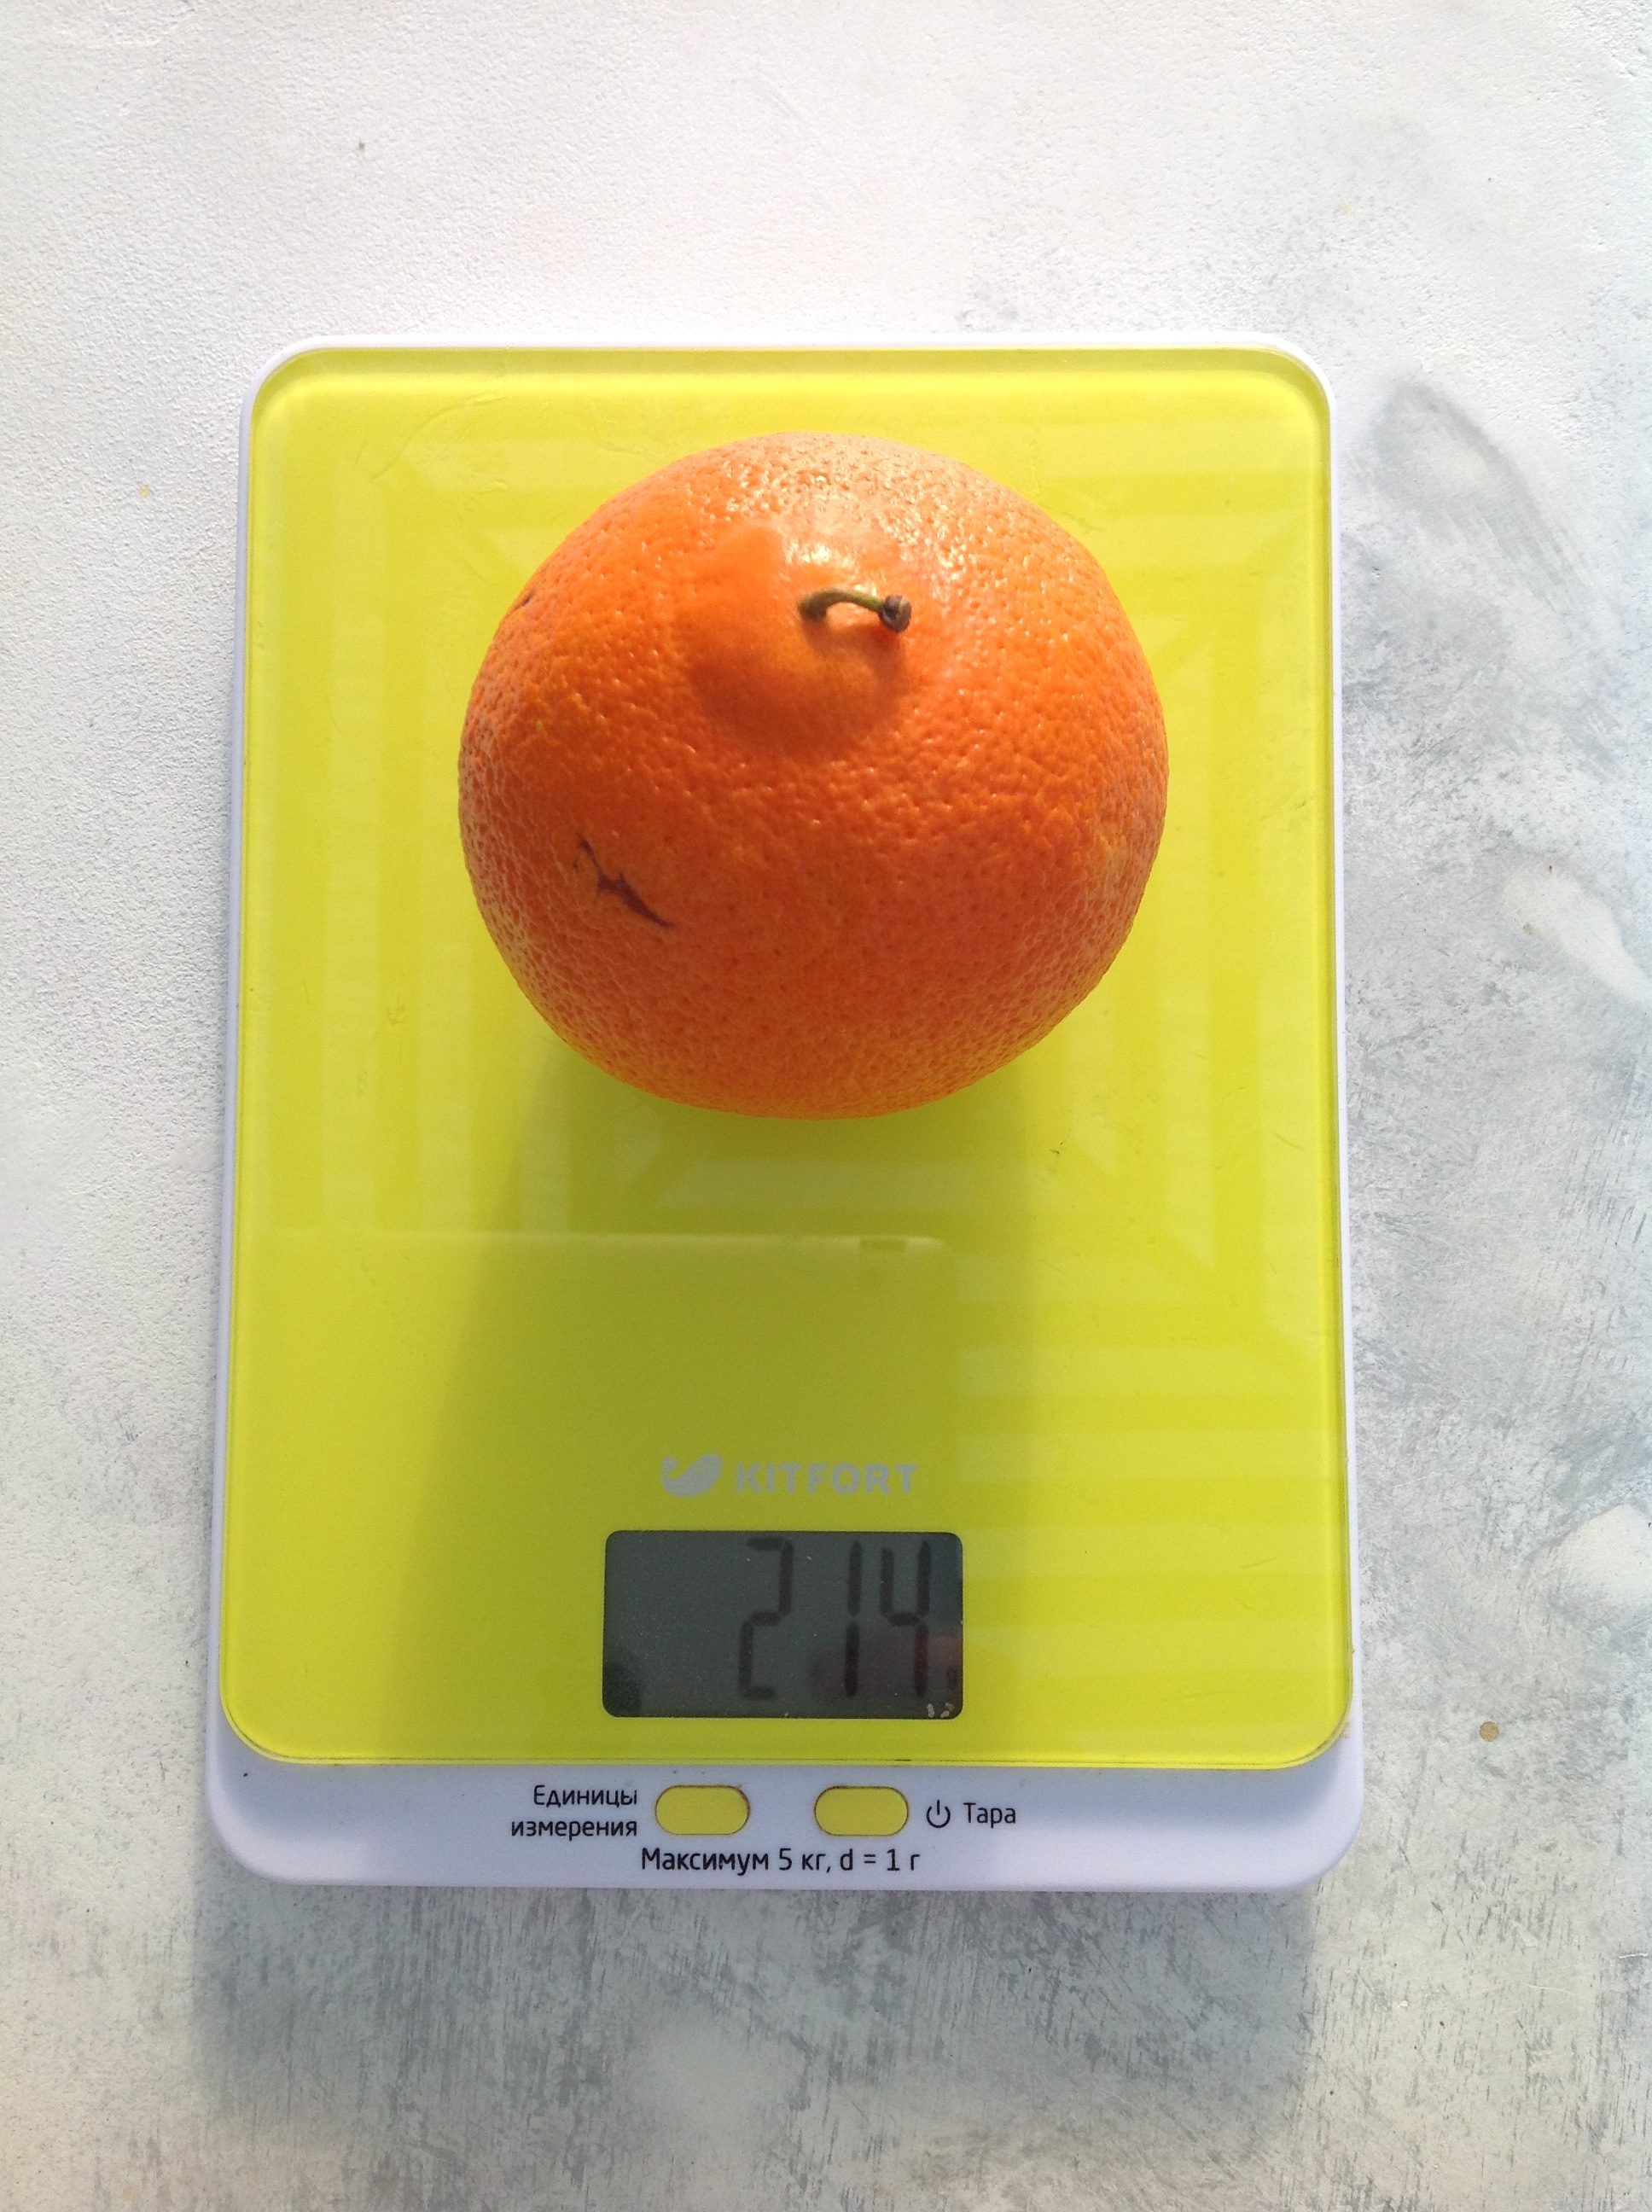 вес апельсина среднего